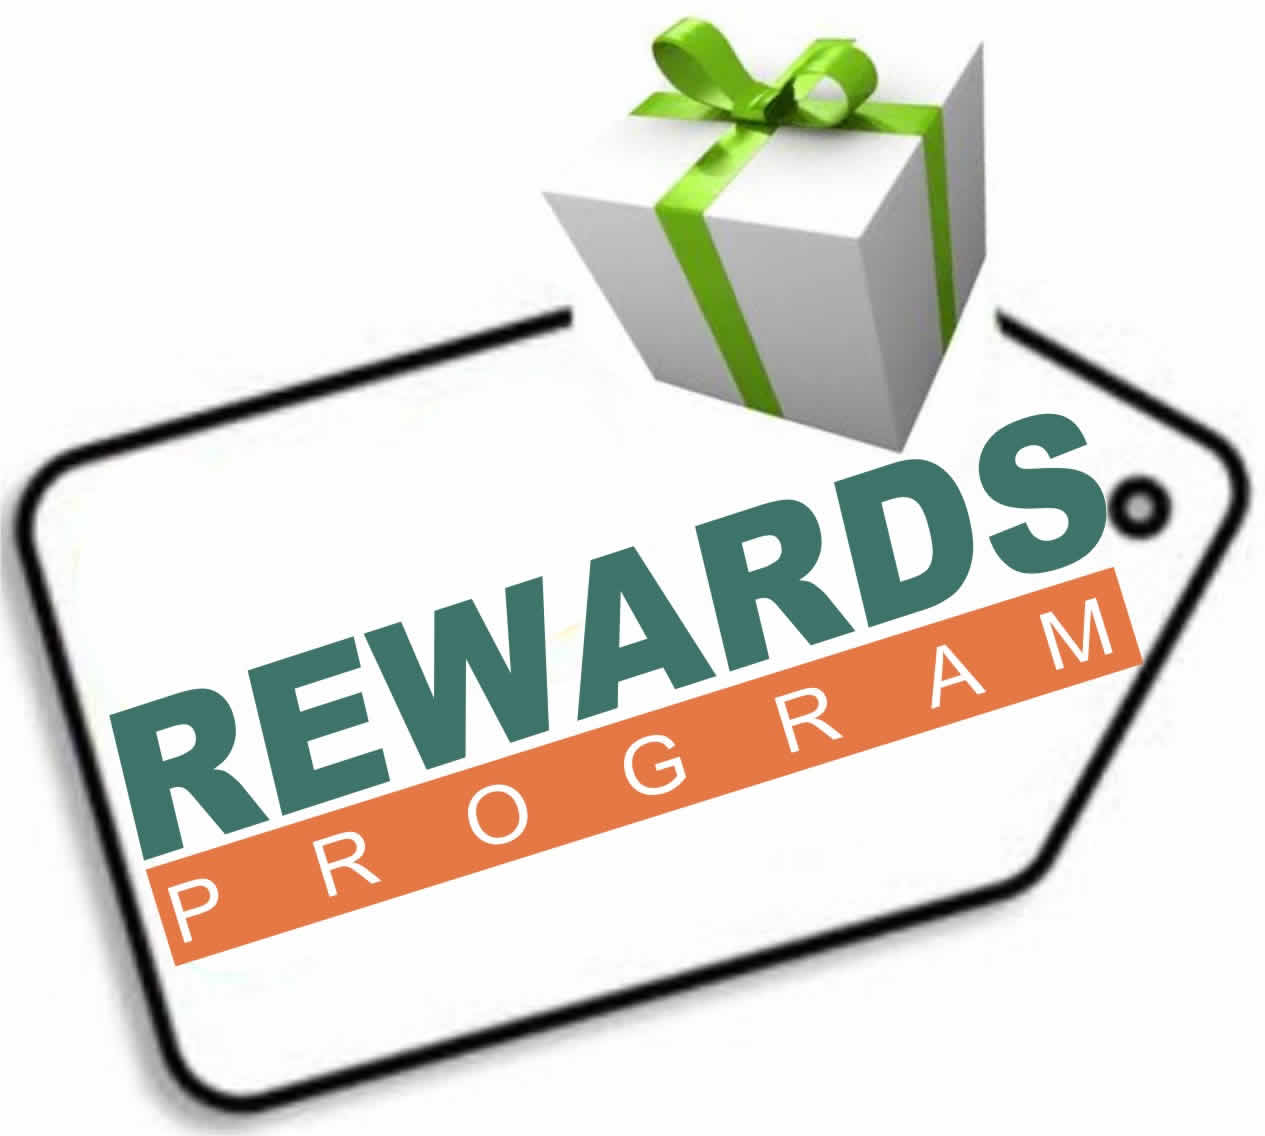 baycard rewards